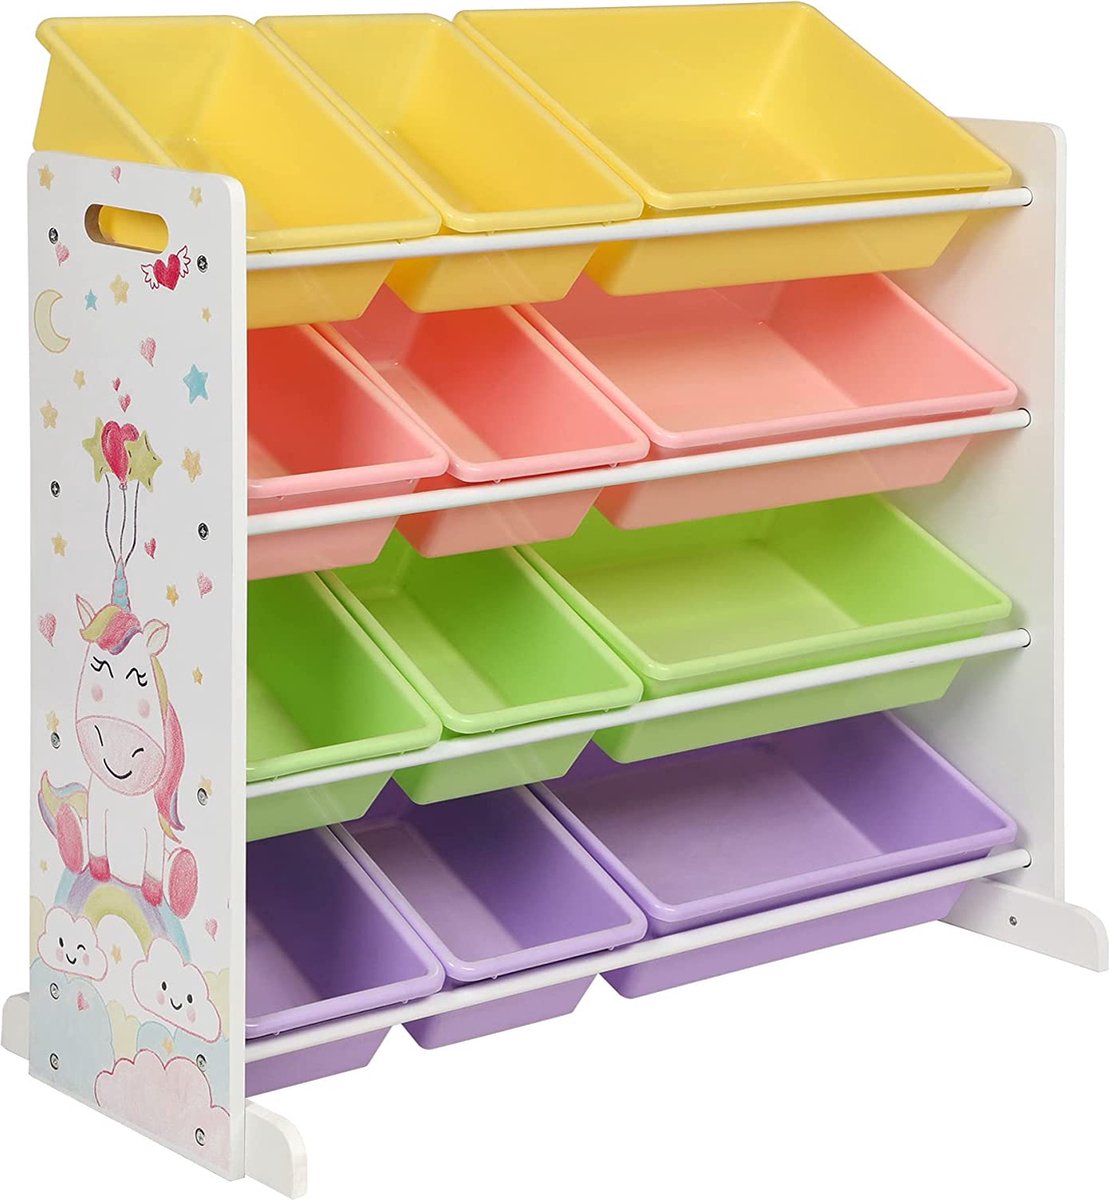 A.T. Shop Speelgoedopberging, Kinderspeelgoed Organizer Rack met 12 verwijderbare PP plastic dozen, voor kinderkamer, speelkamer, 86 x 38 x 78 cm, wit, roze, oranje, paars en groen